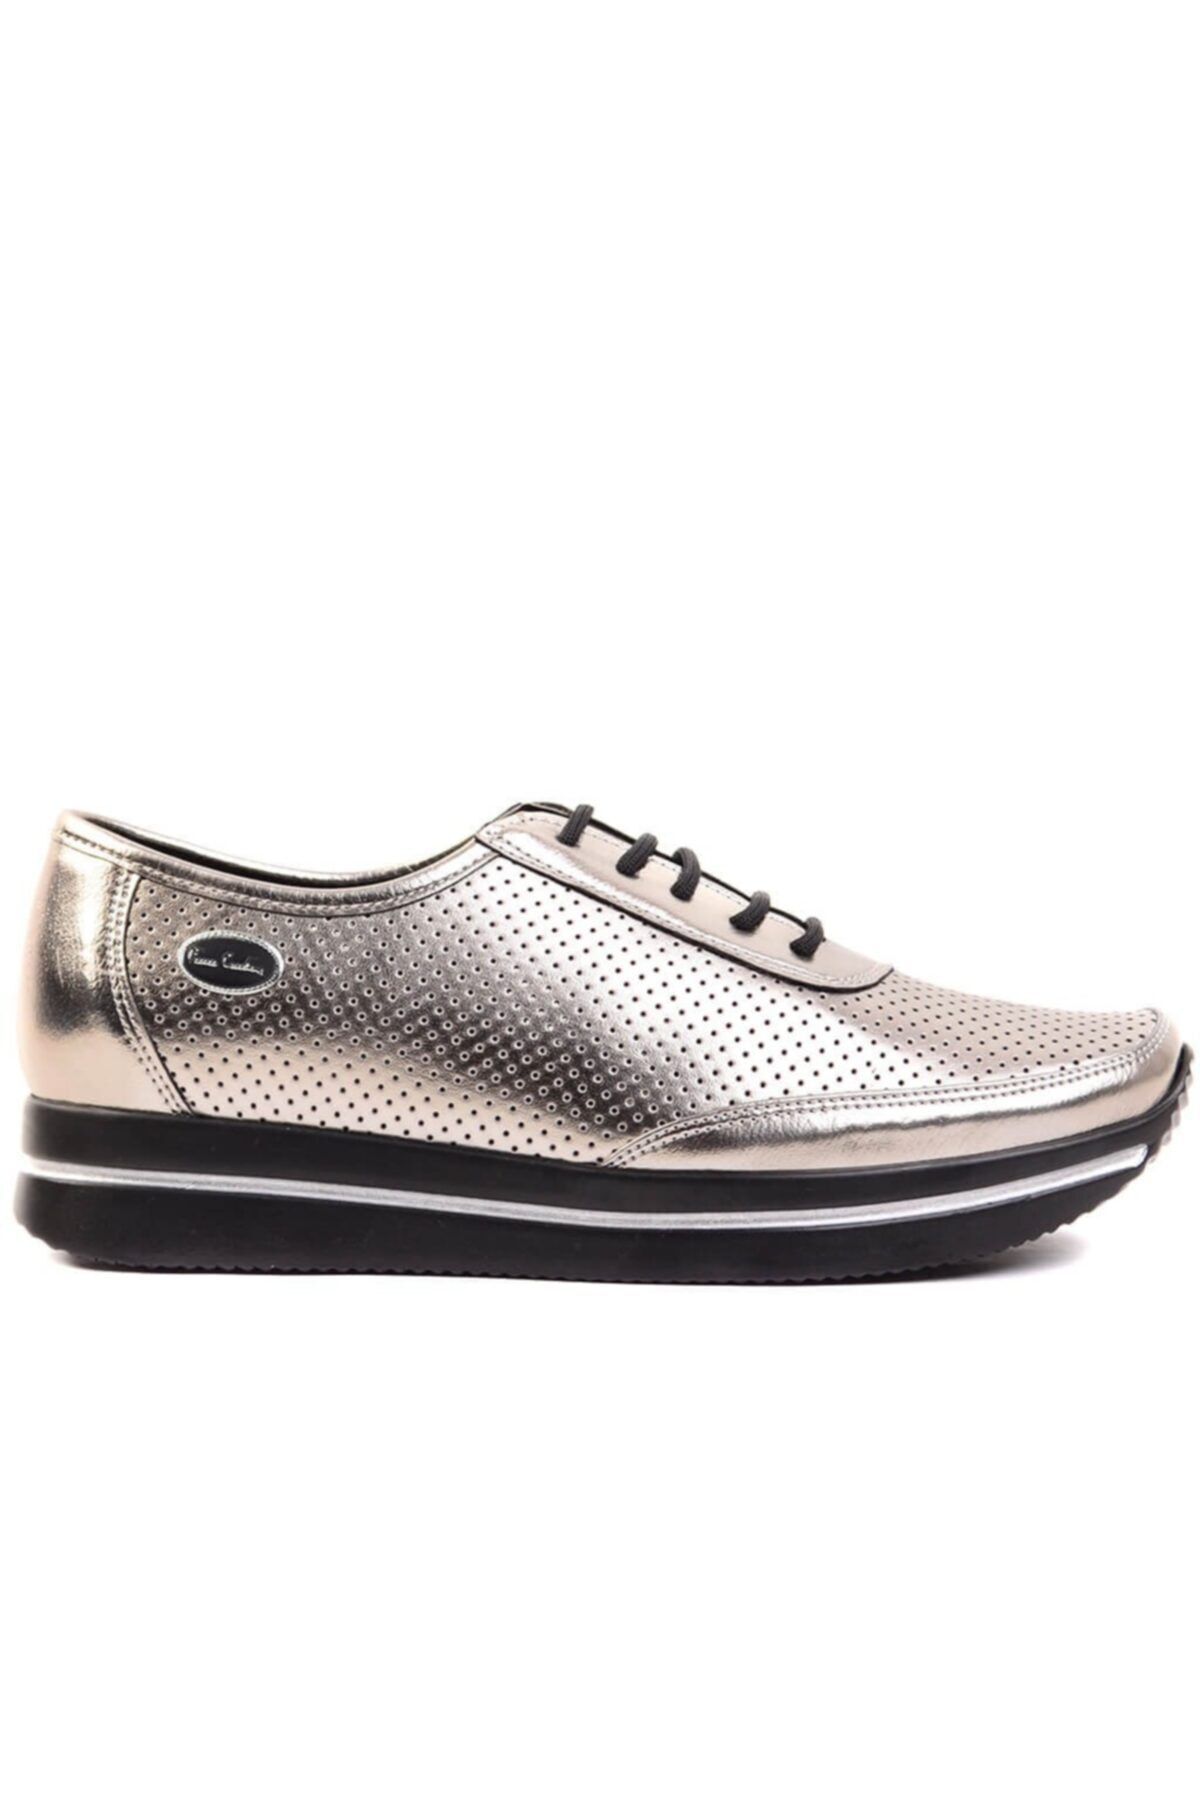 Pierre Cardin Kadın Gümüş Ayakkabı